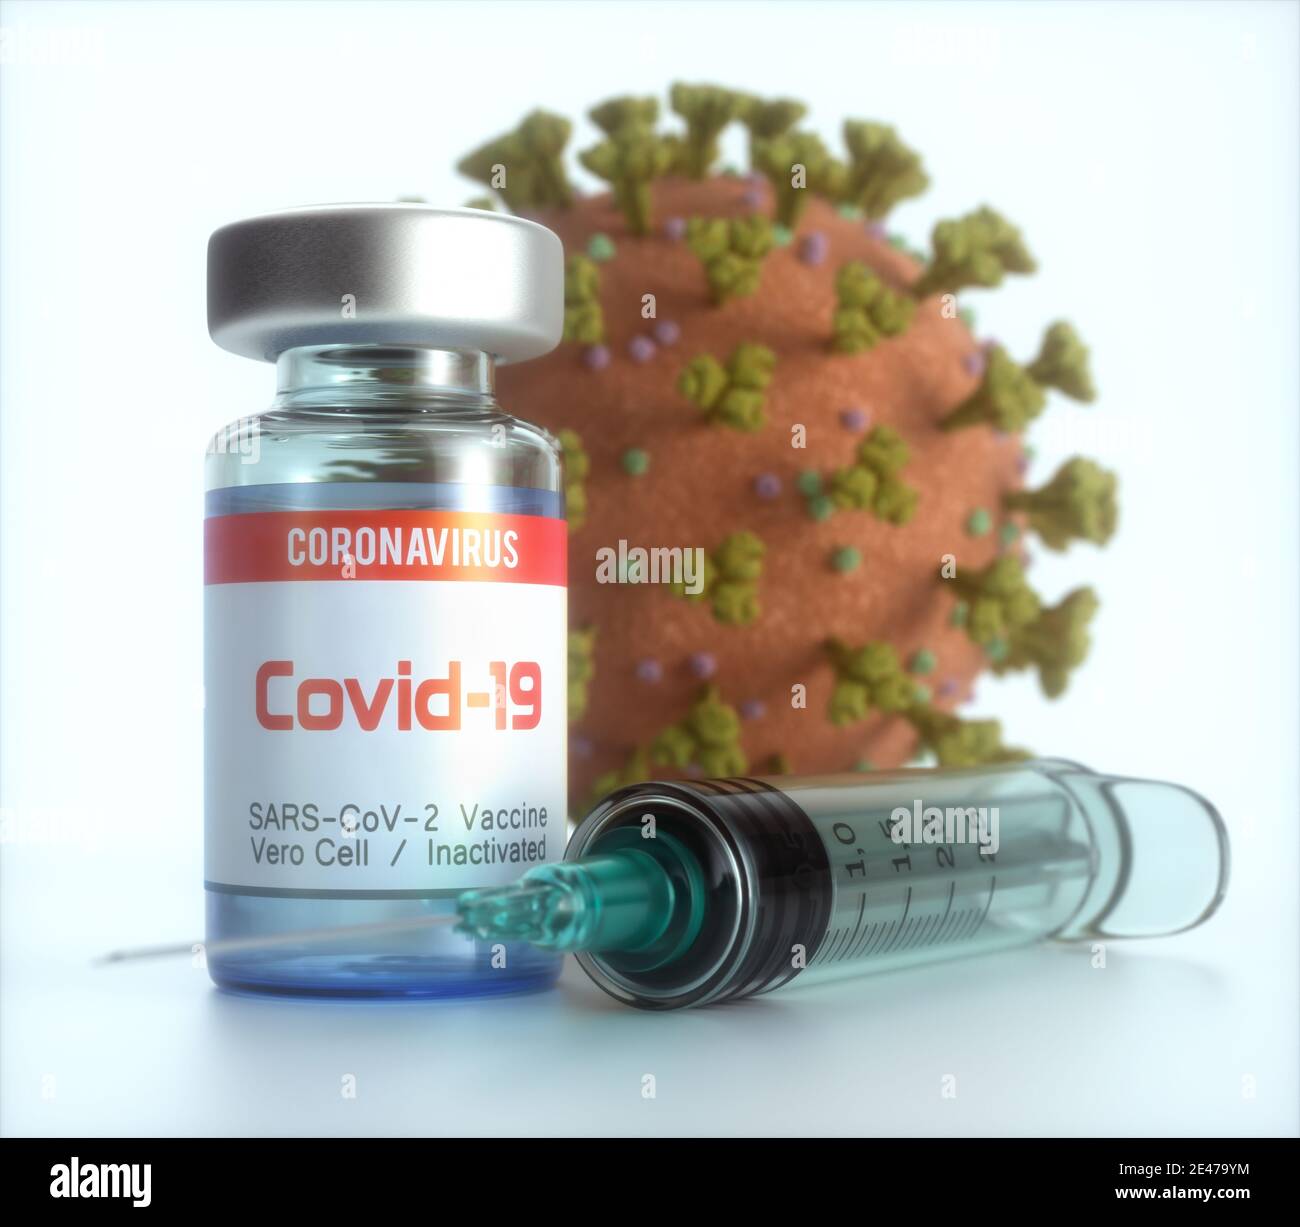 Image conceptuelle pour la découverte d'un vaccin contre le Covid-19, le coronavirus, 2019-nCoV, le SRAS-COV-2. Illustration tridimensionnelle. Banque D'Images